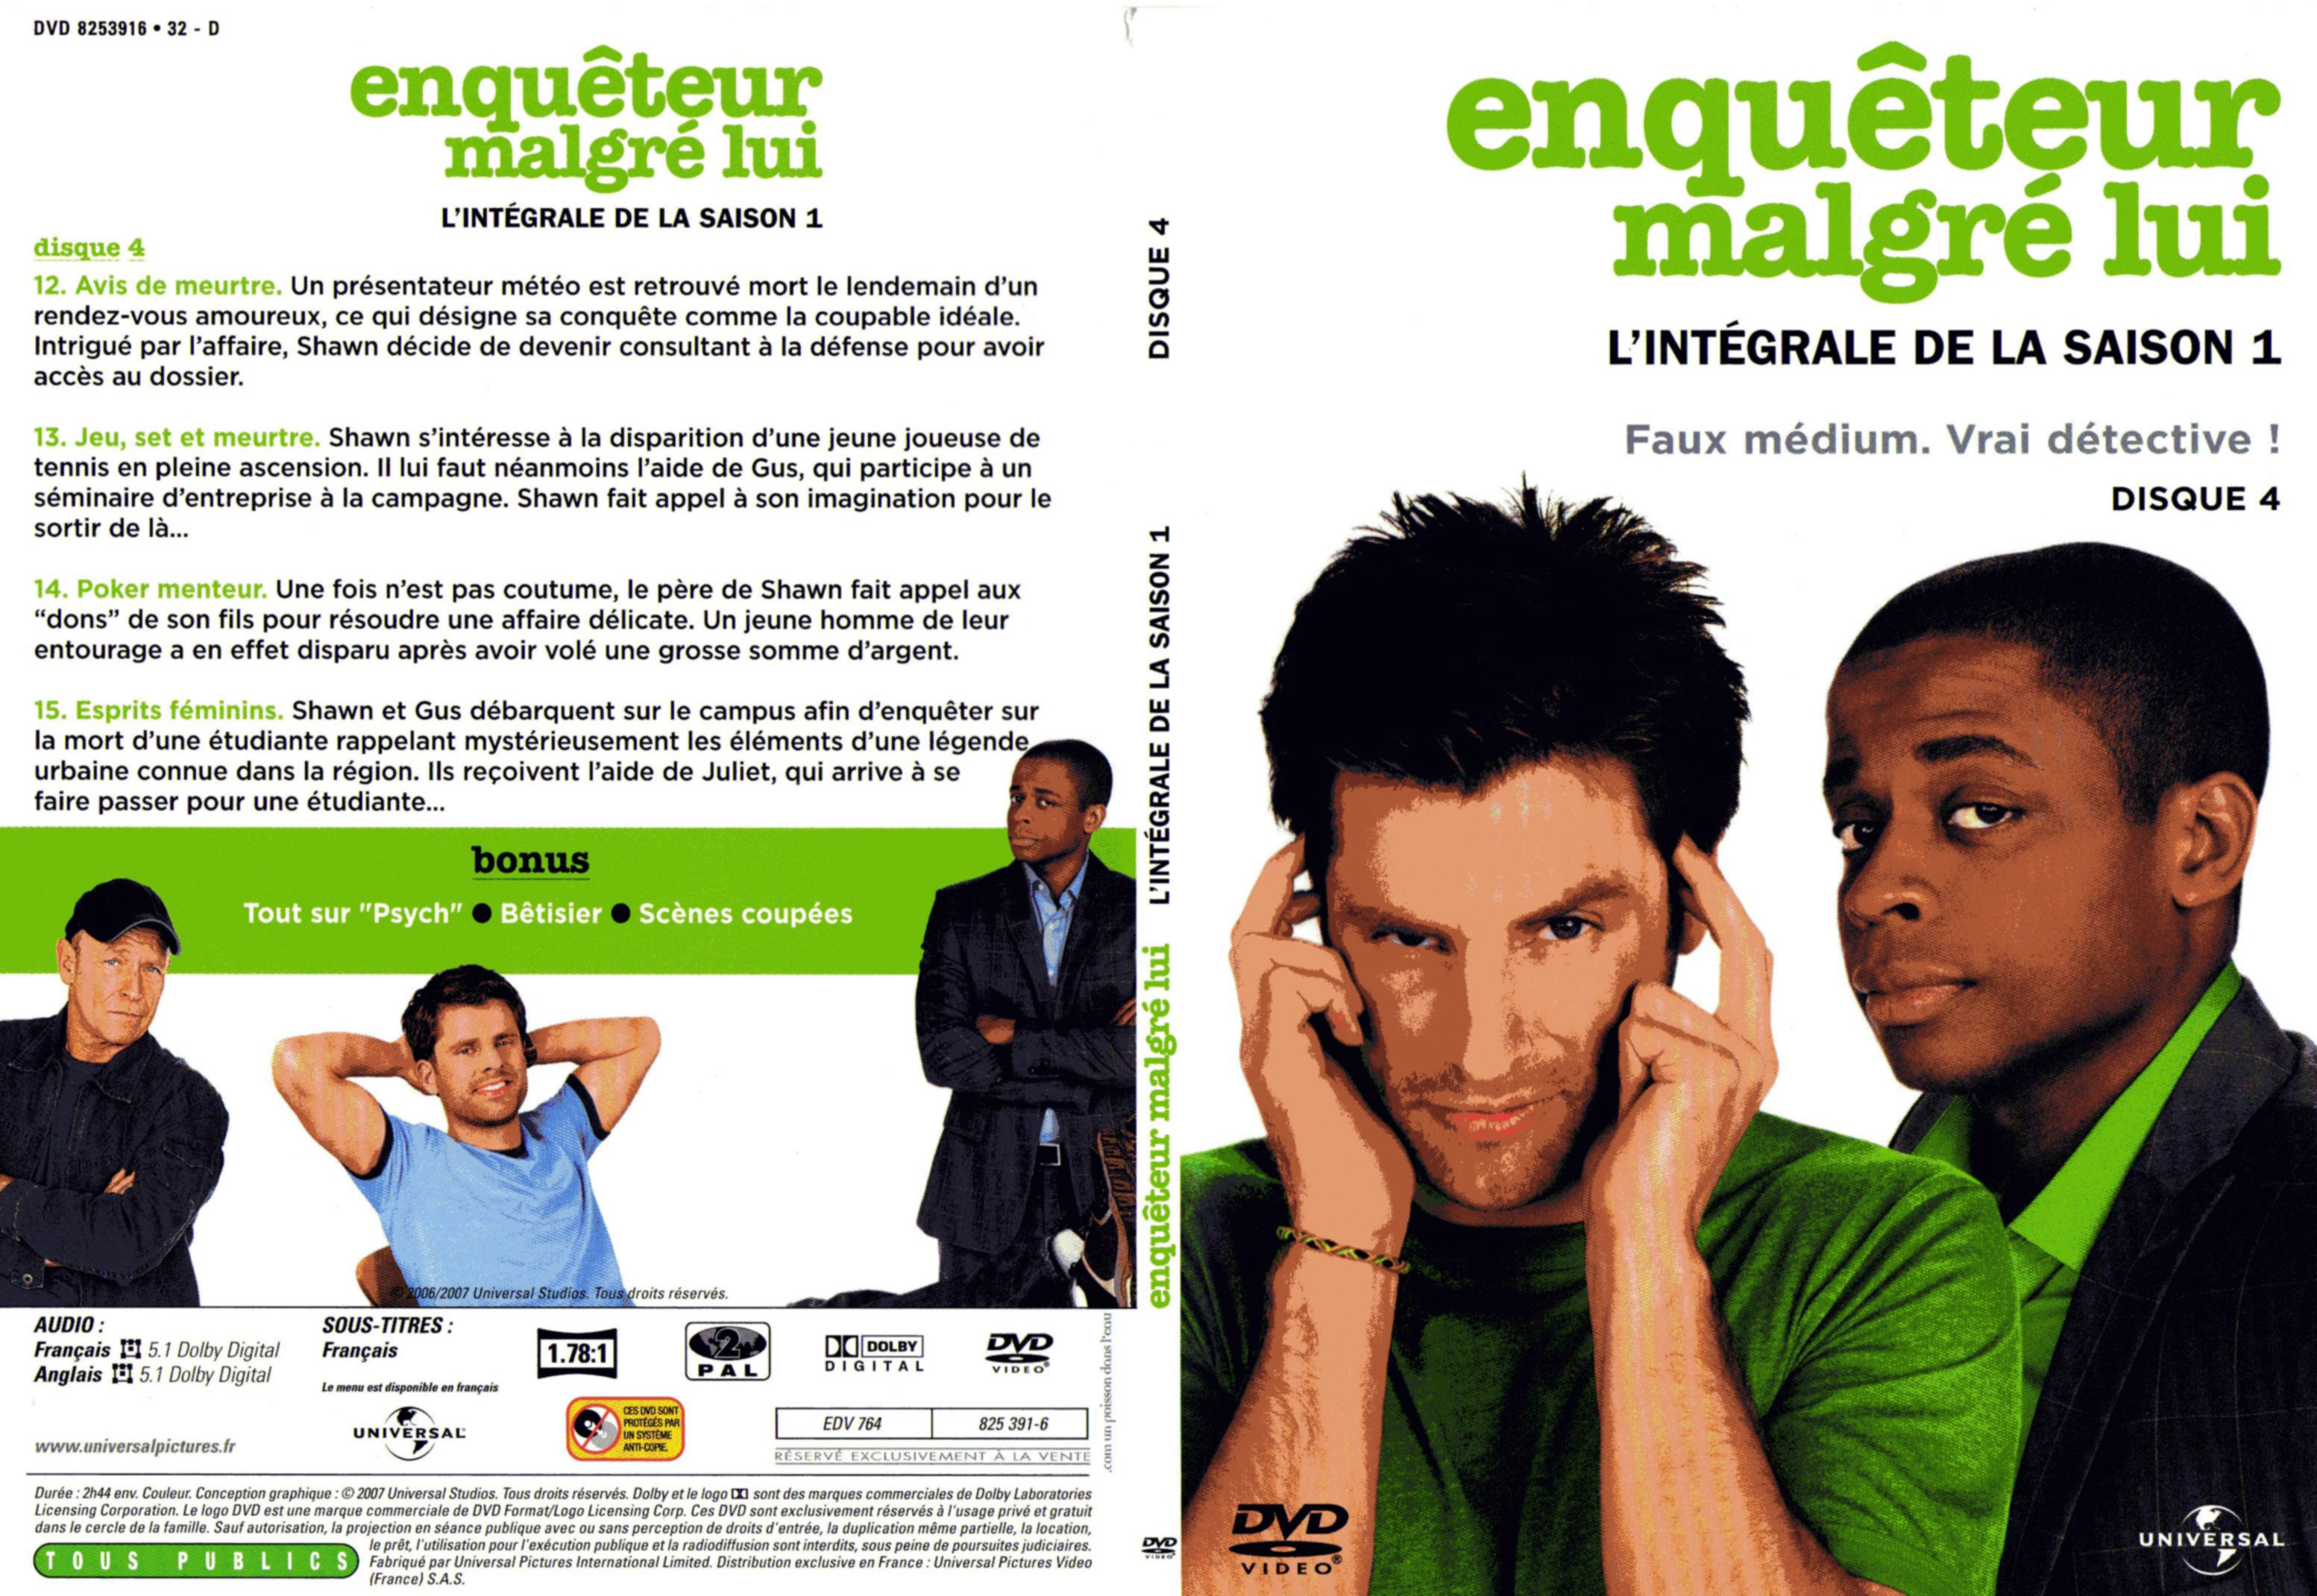 Jaquette DVD Enqueteur malgr lui Saison 1 DVD 4